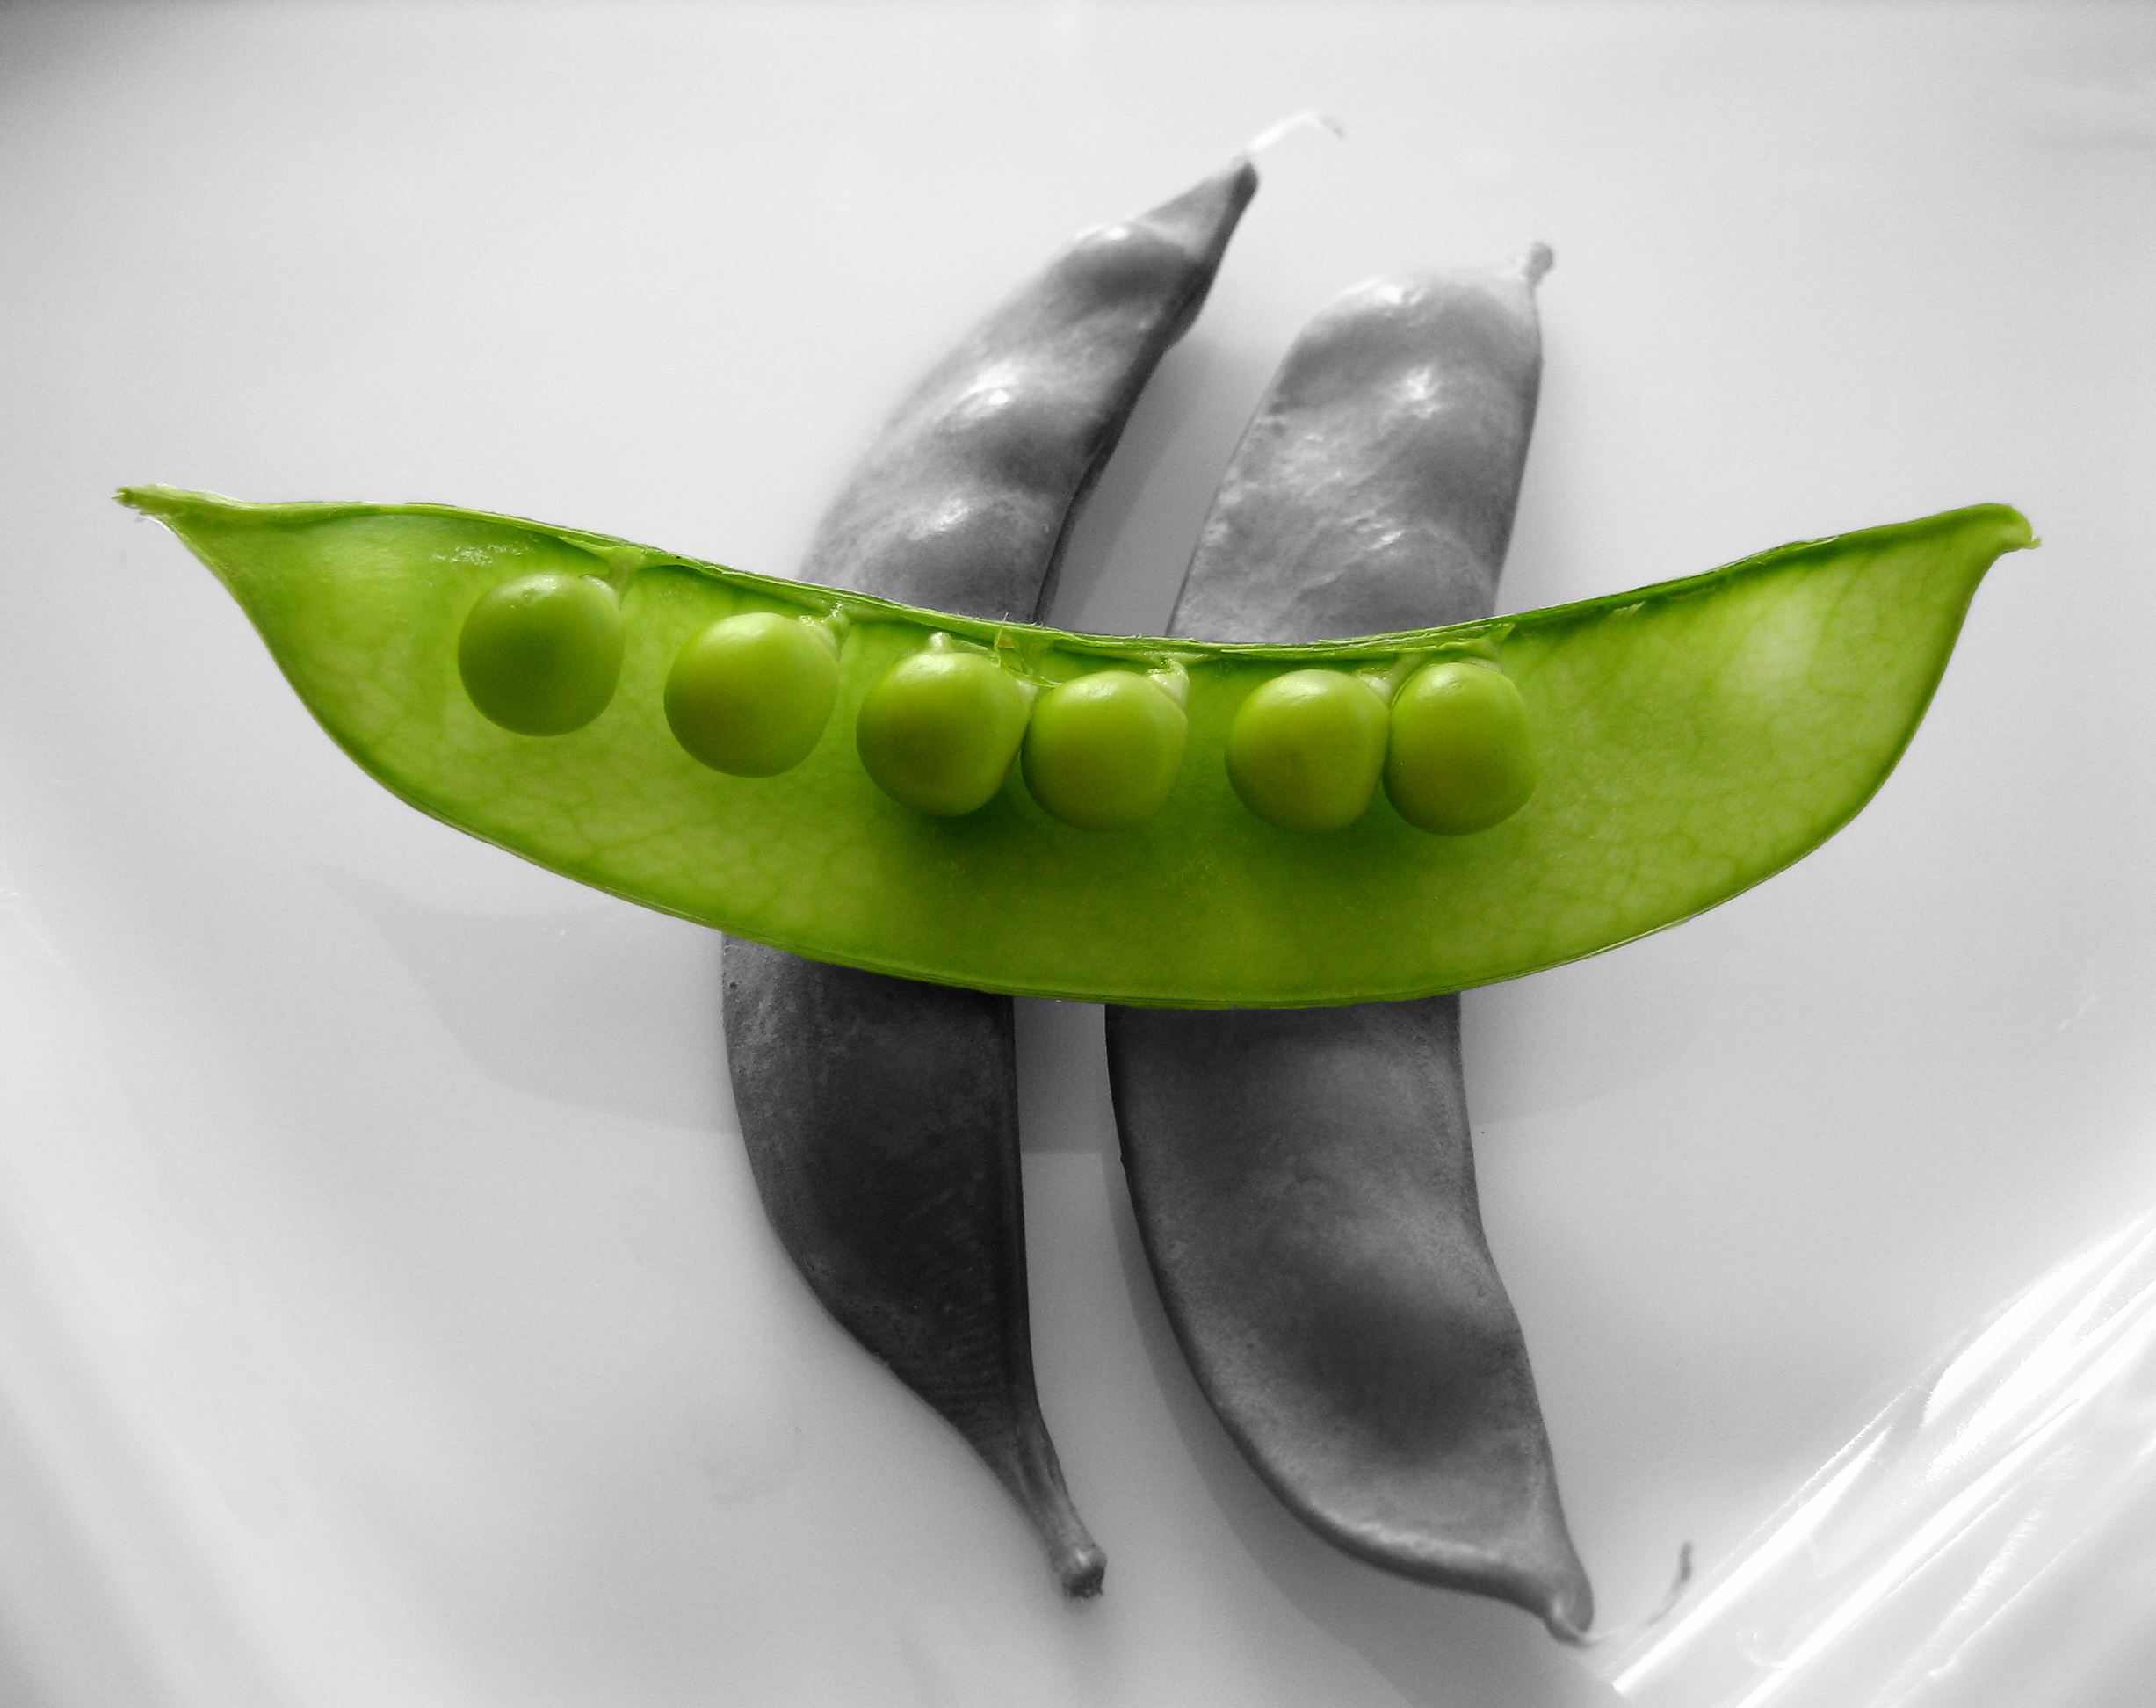 snow peas